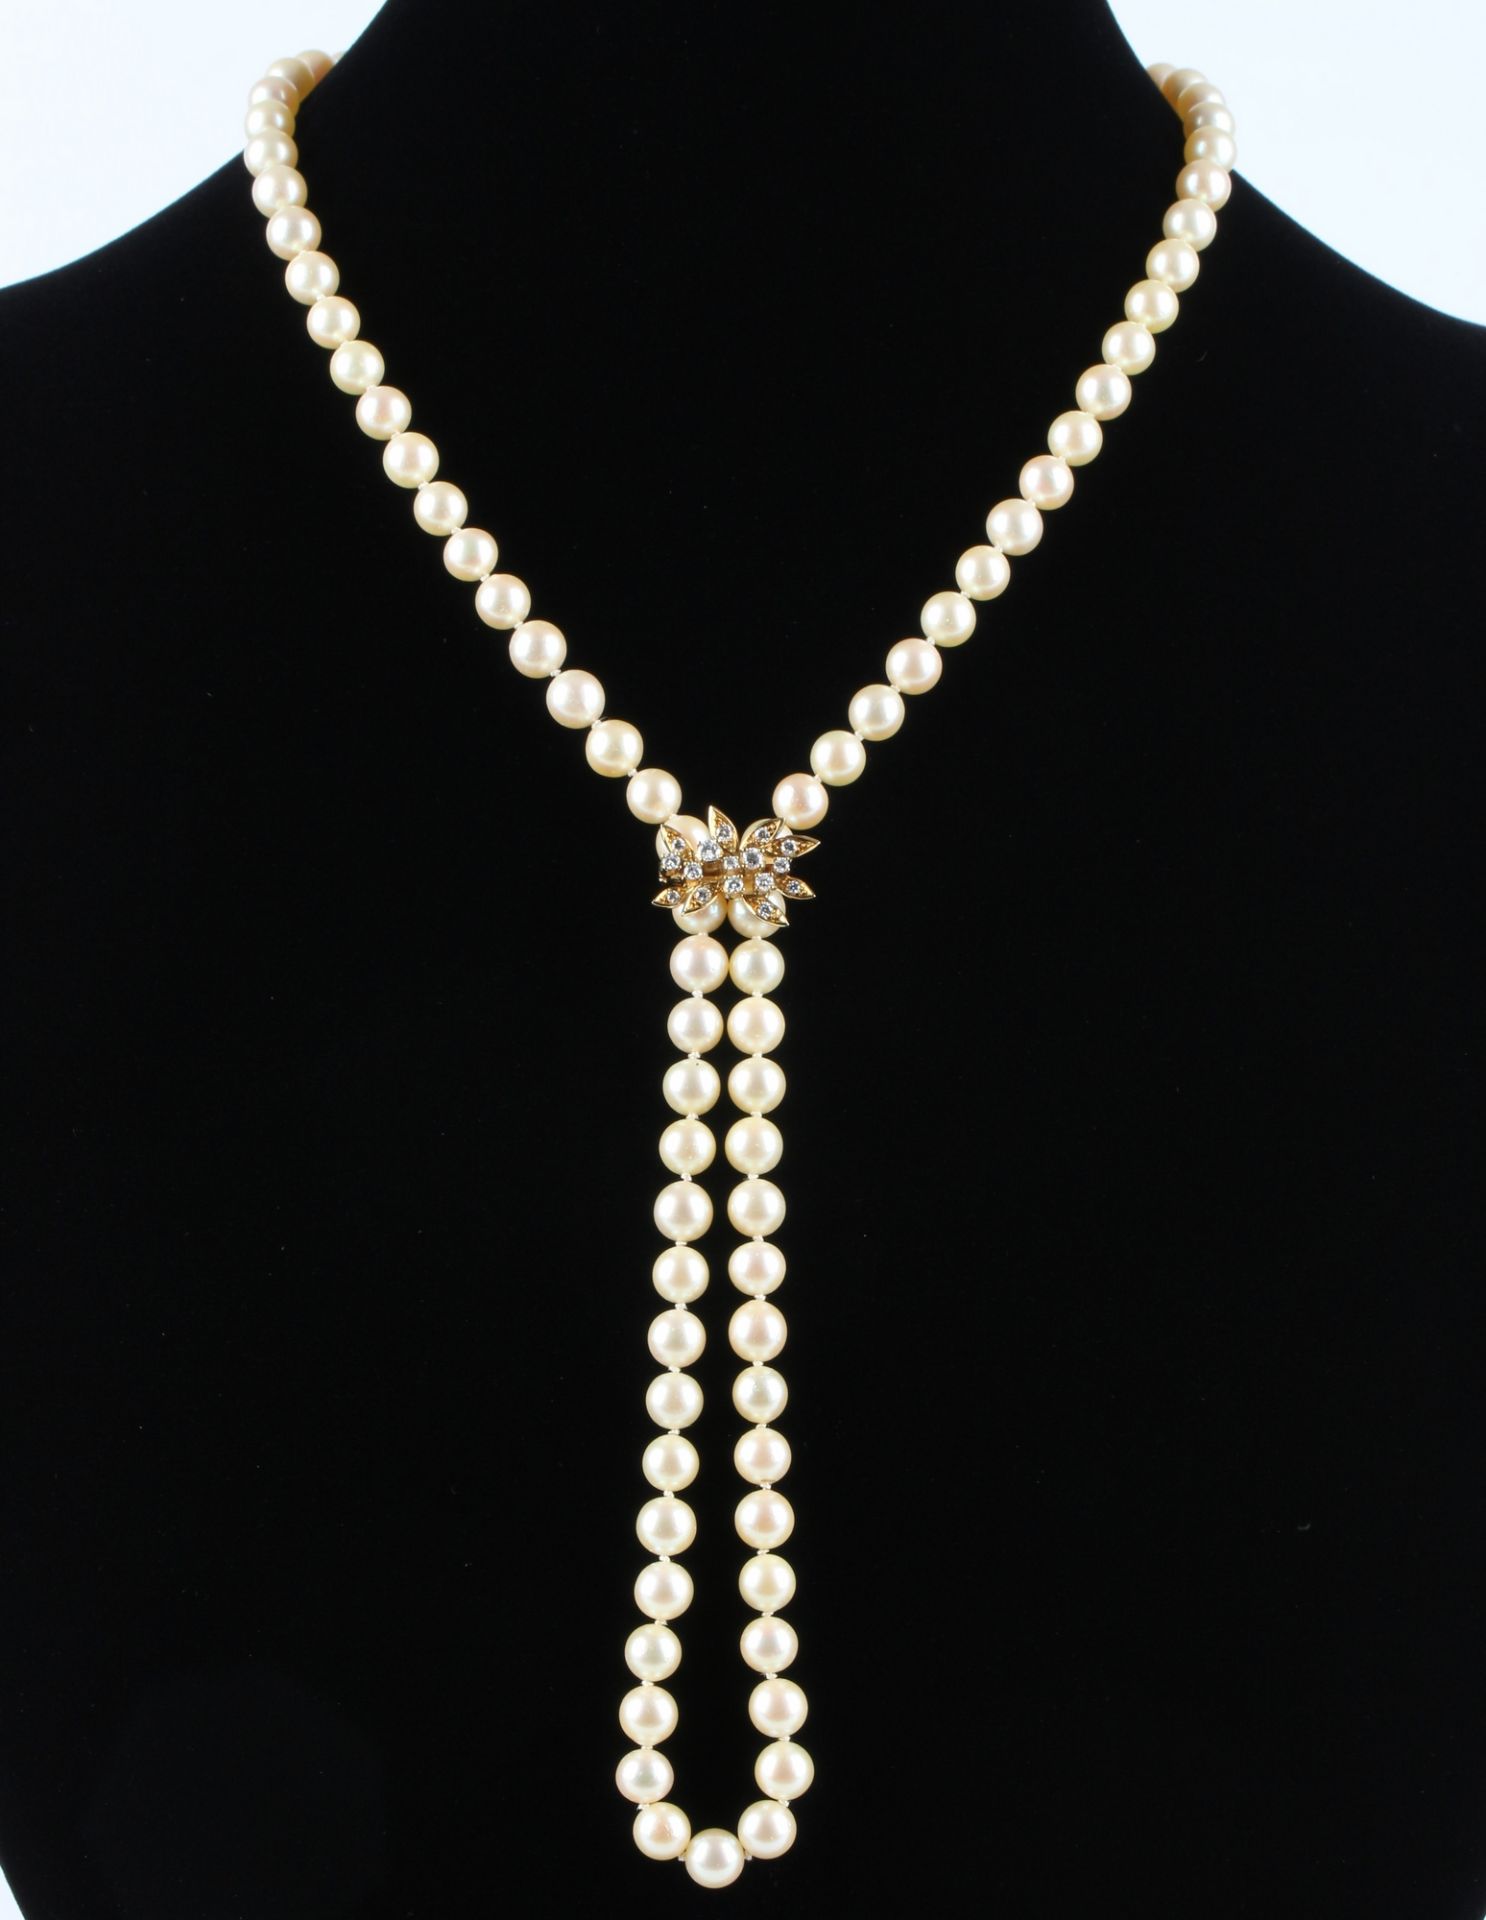 Perlenkette / Collier mit 750 Gold Verschluss mit Diamanten, pearl necklace with gold diamond lock, - Bild 2 aus 5